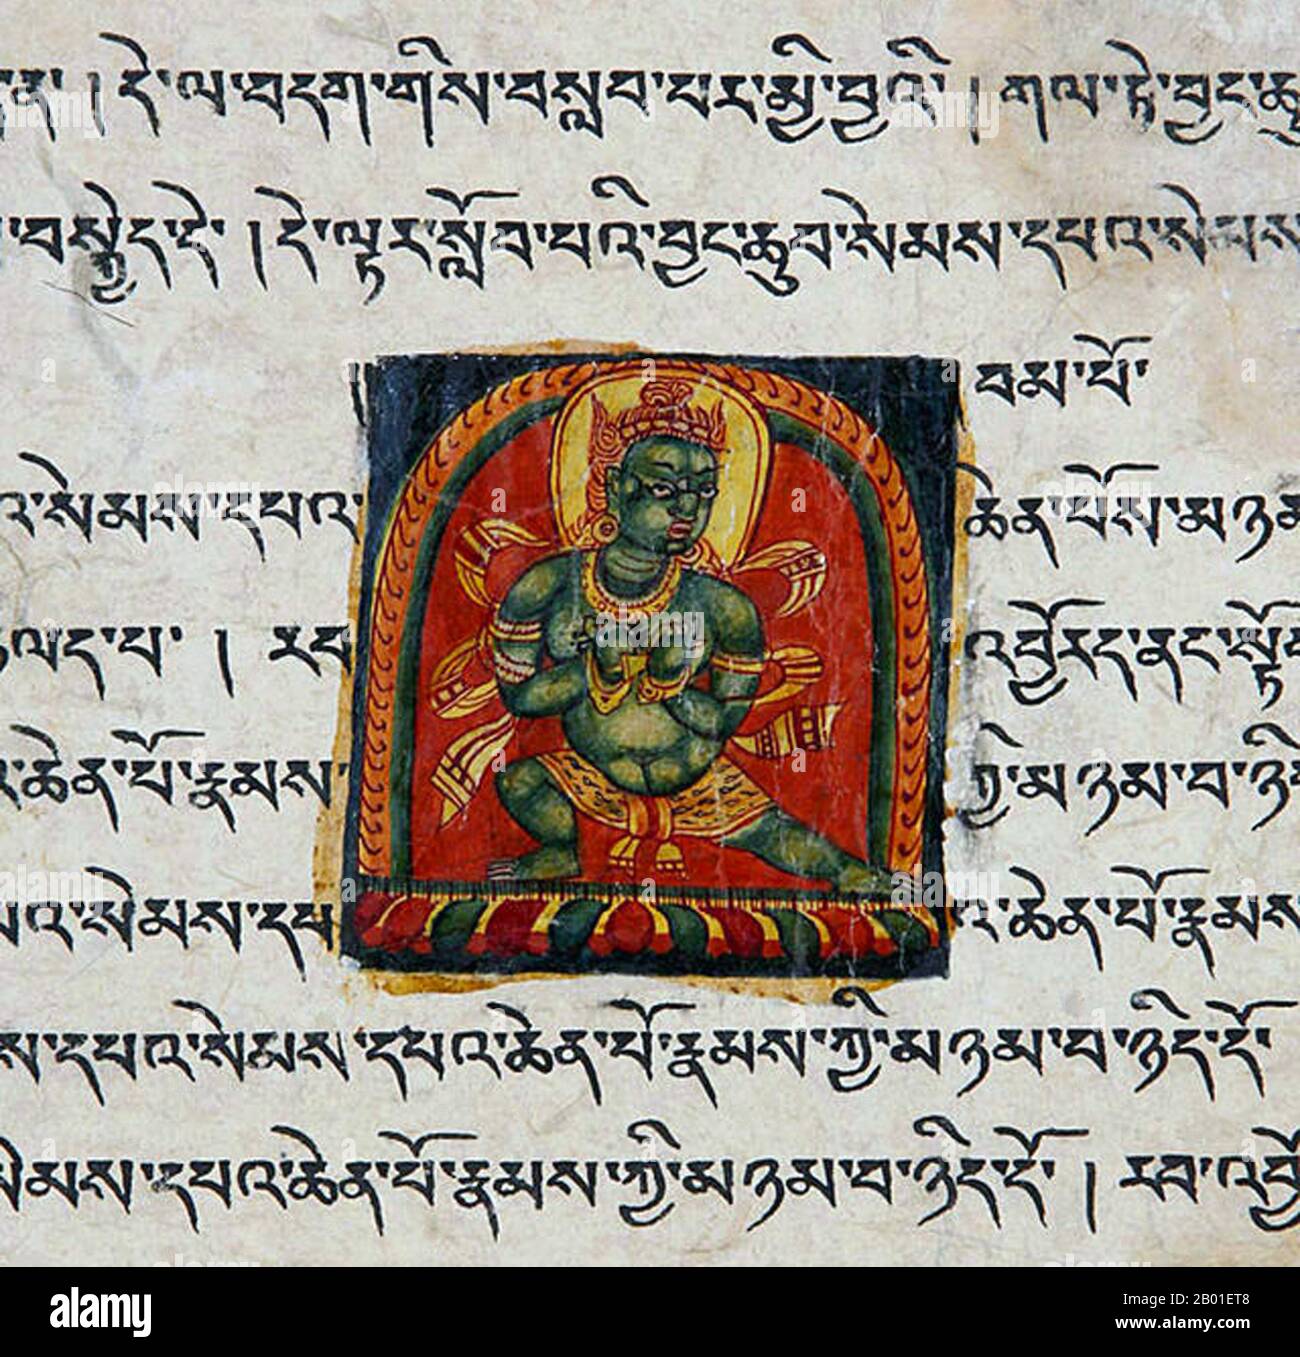 China/Tibet: Abschnitt aus einem beleuchteten Manuskript, c. 12.-13. Jahrhundert. Das tibetische Alphabet ist eine Abugida indischer Herkunft, die sowohl die tibetische Sprache als auch die Dzongkha-Sprache, Denzongkha, Ladakhi und manchmal die Balti-Sprache schreibt. Die gedruckte Schrift des Alphabets heißt uchen script (Tibetisch: དབུ་ཅན་; Wylie: dbu-can; 'mit Kopf'), während die handgeschriebene kursive Schrift, die im Alltag verwendet wird, umê heißt (Tibetisch: དབུ་མེད་; Wylie: dbu-med; 'kopflose'). Das Alphabet ist eng mit einer breiten tibetischen Identität verbunden. Stockfoto